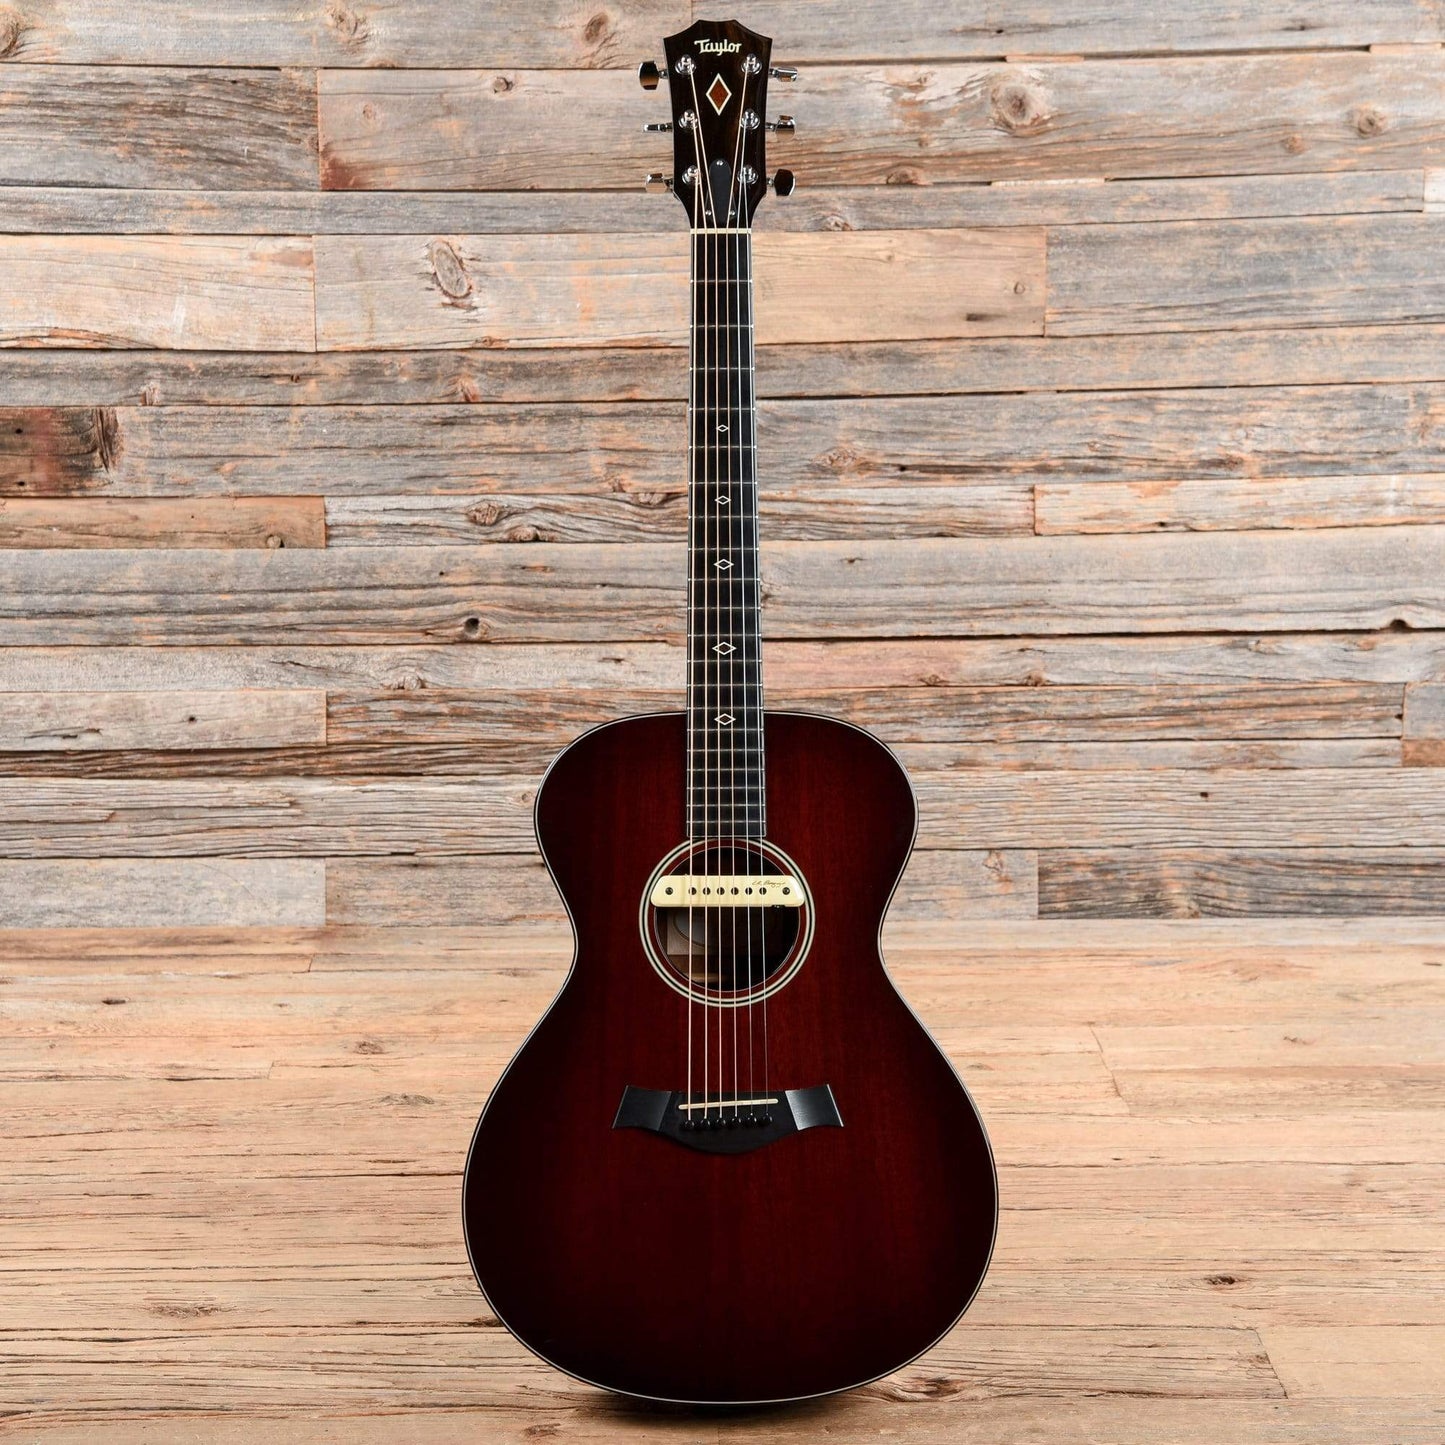 Taylor M-522 Sunburst 2013 Acoustic Guitars / OM and Auditorium